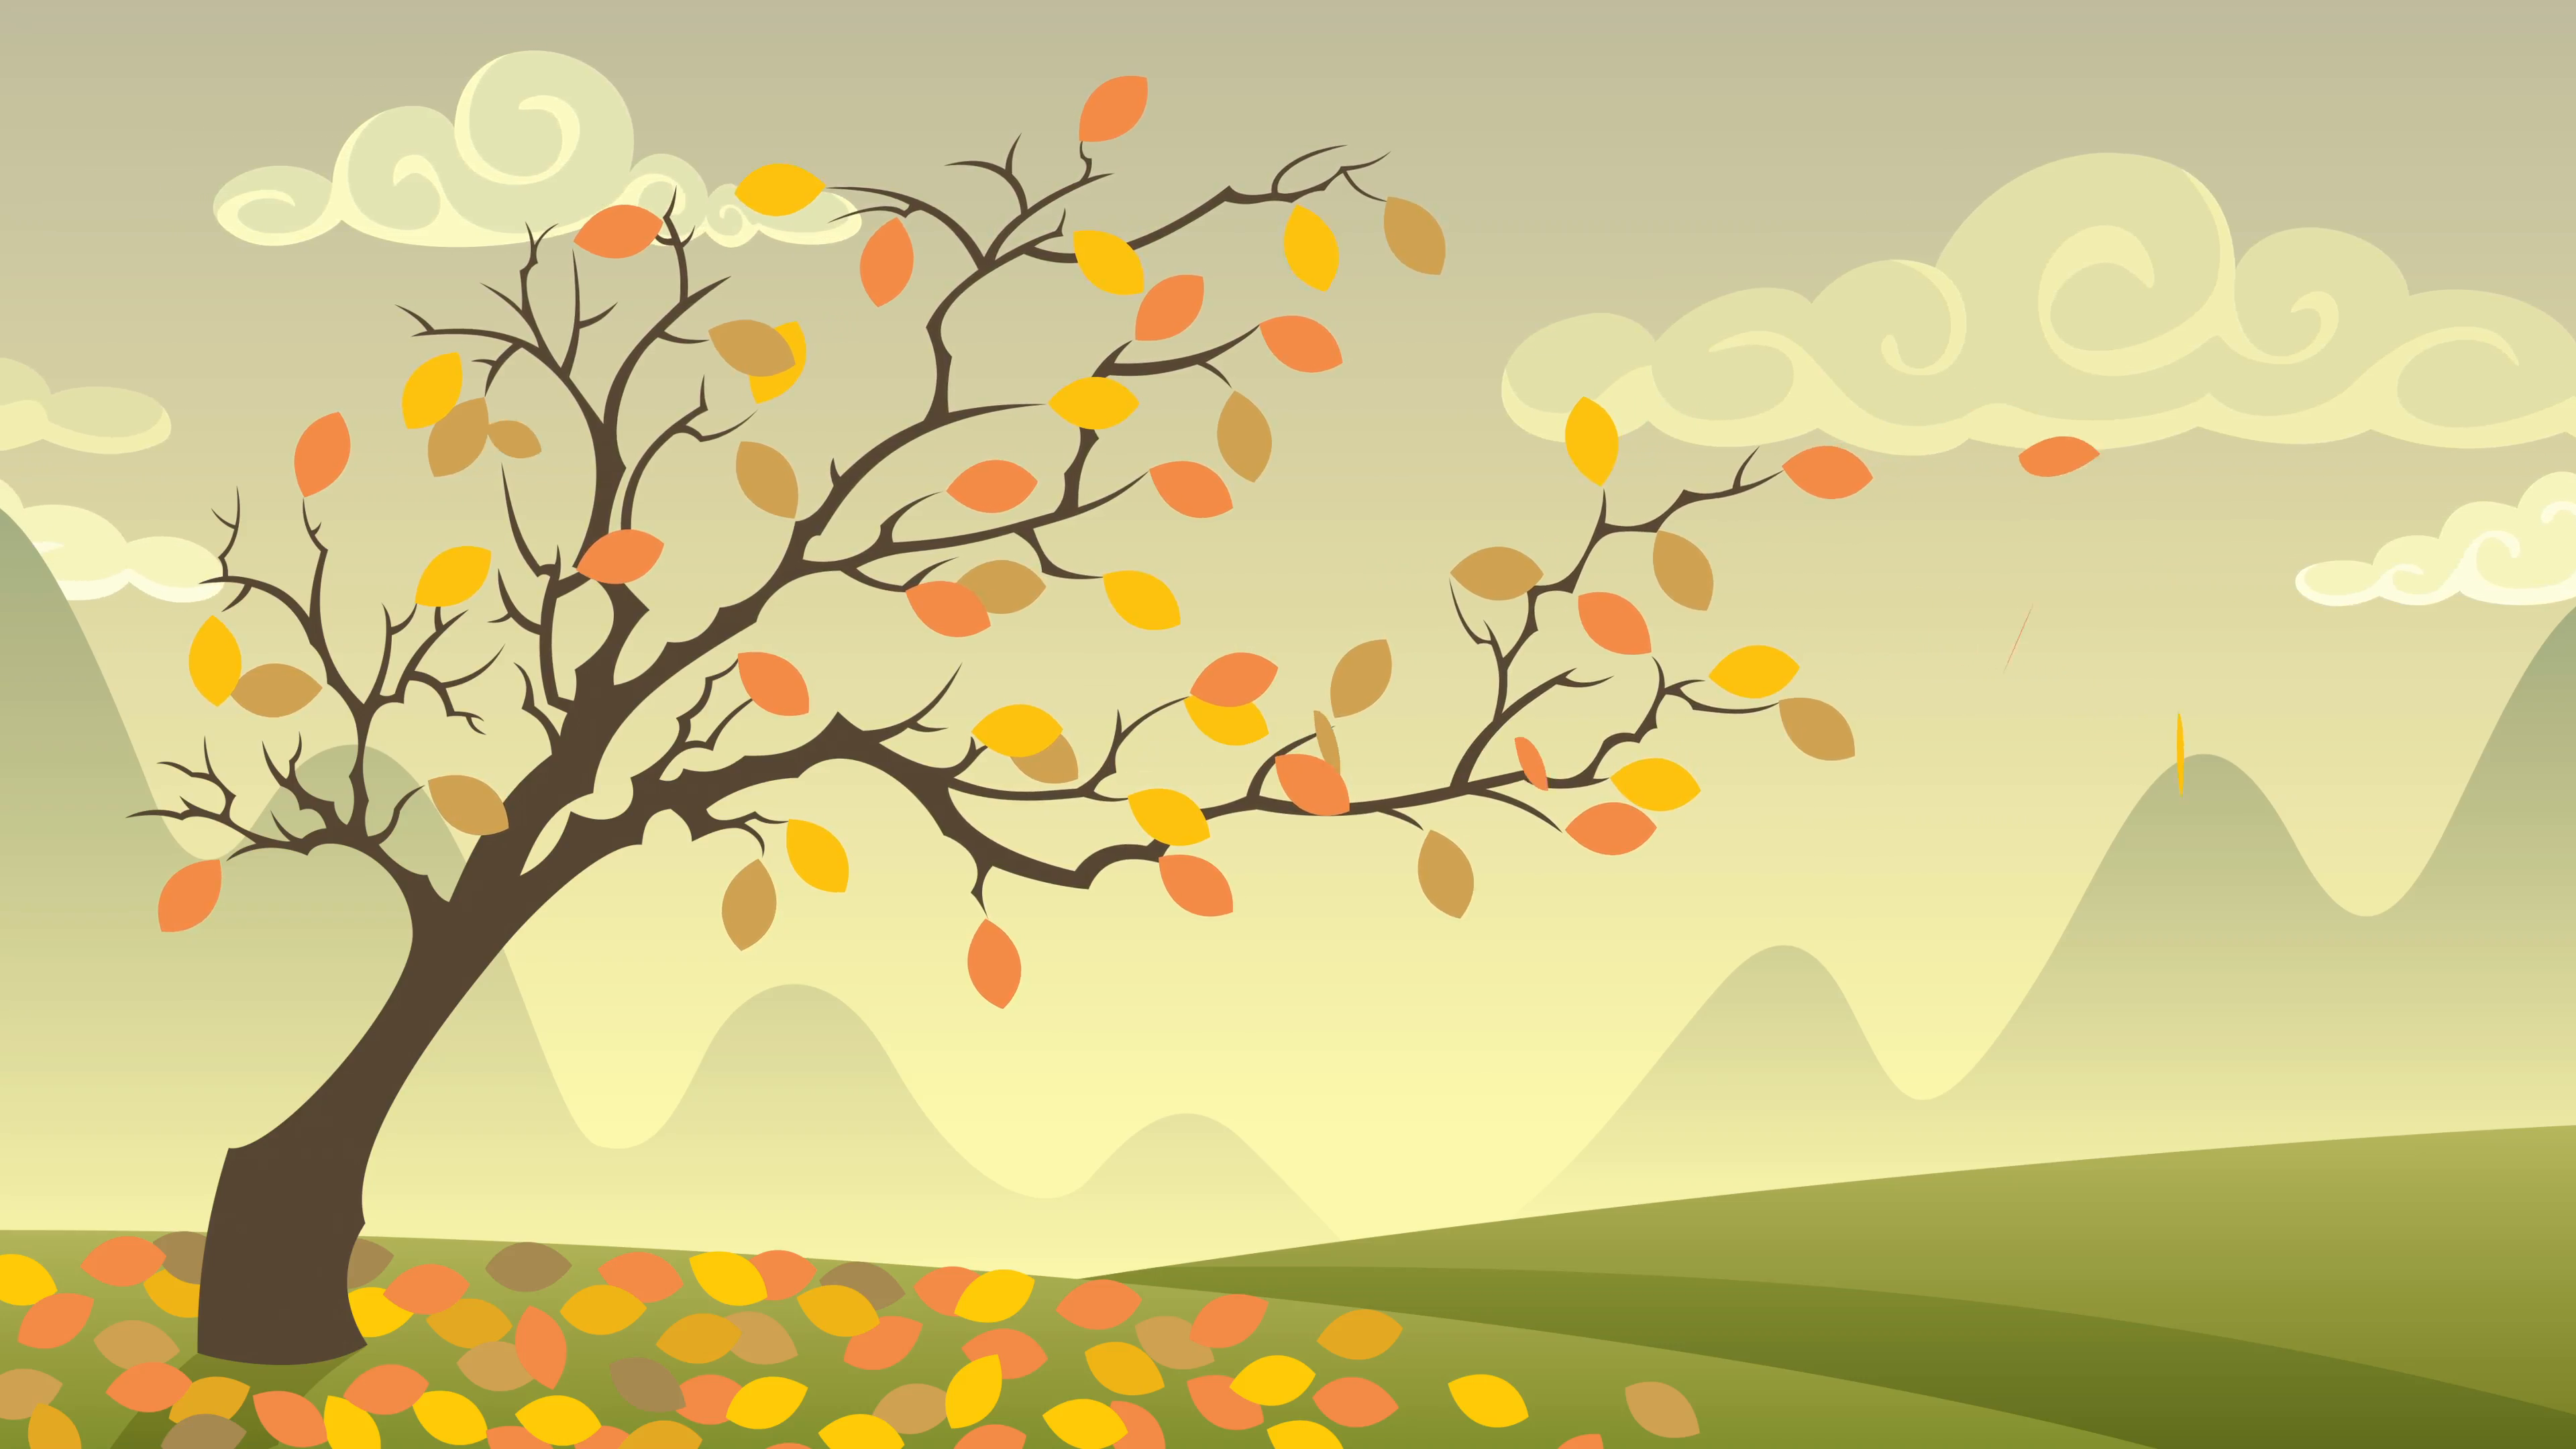 شعر | واحدکار پاییز | شعر تغییرات آب و هوایی در پاییز